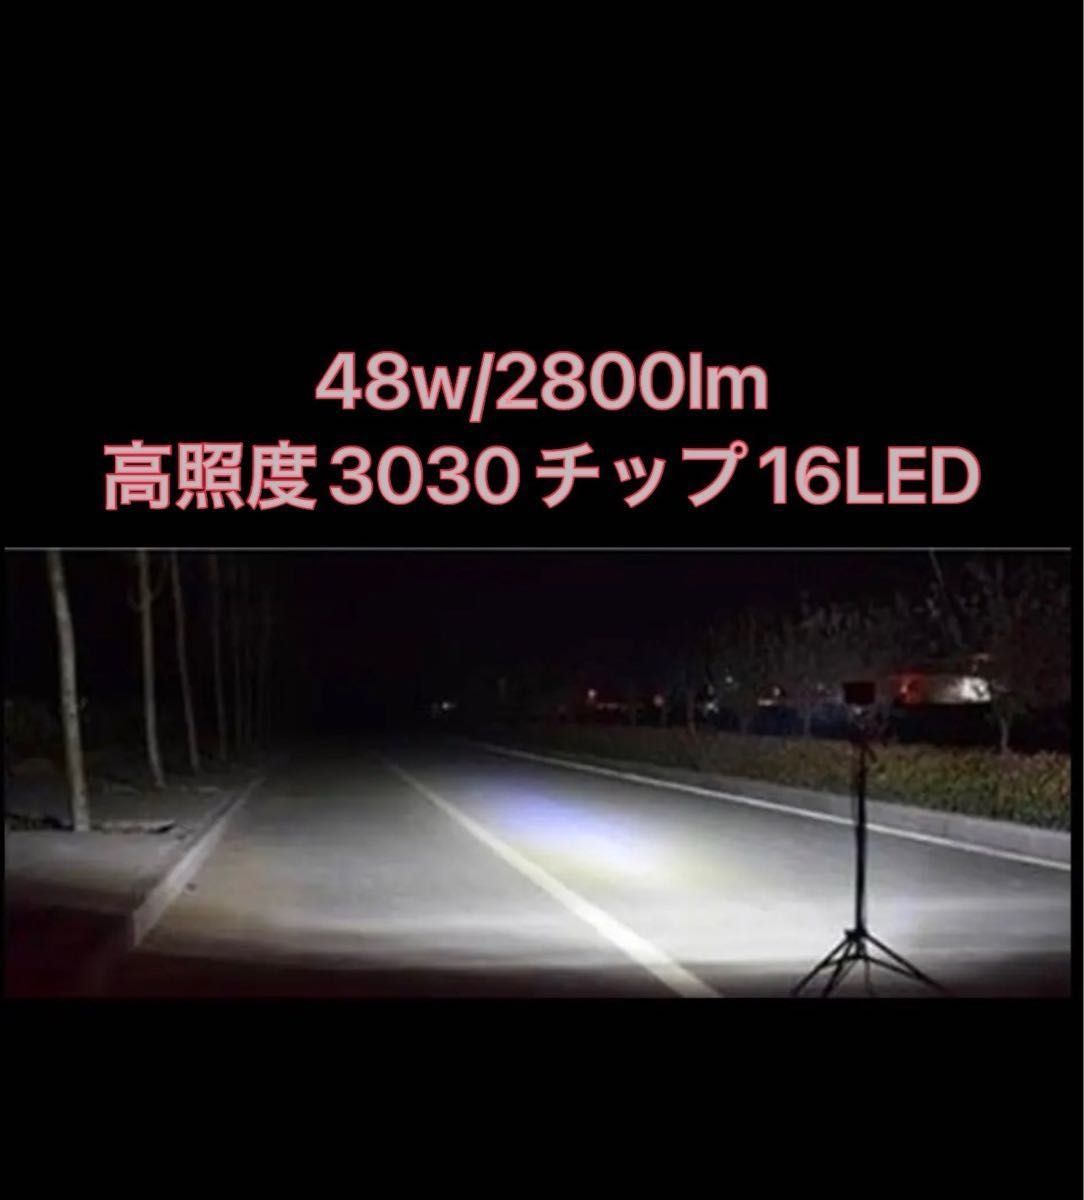 省電力48w /2800lm ツインUSB出力 2.4A LED ワークライト LED投光器 LEDワークライト